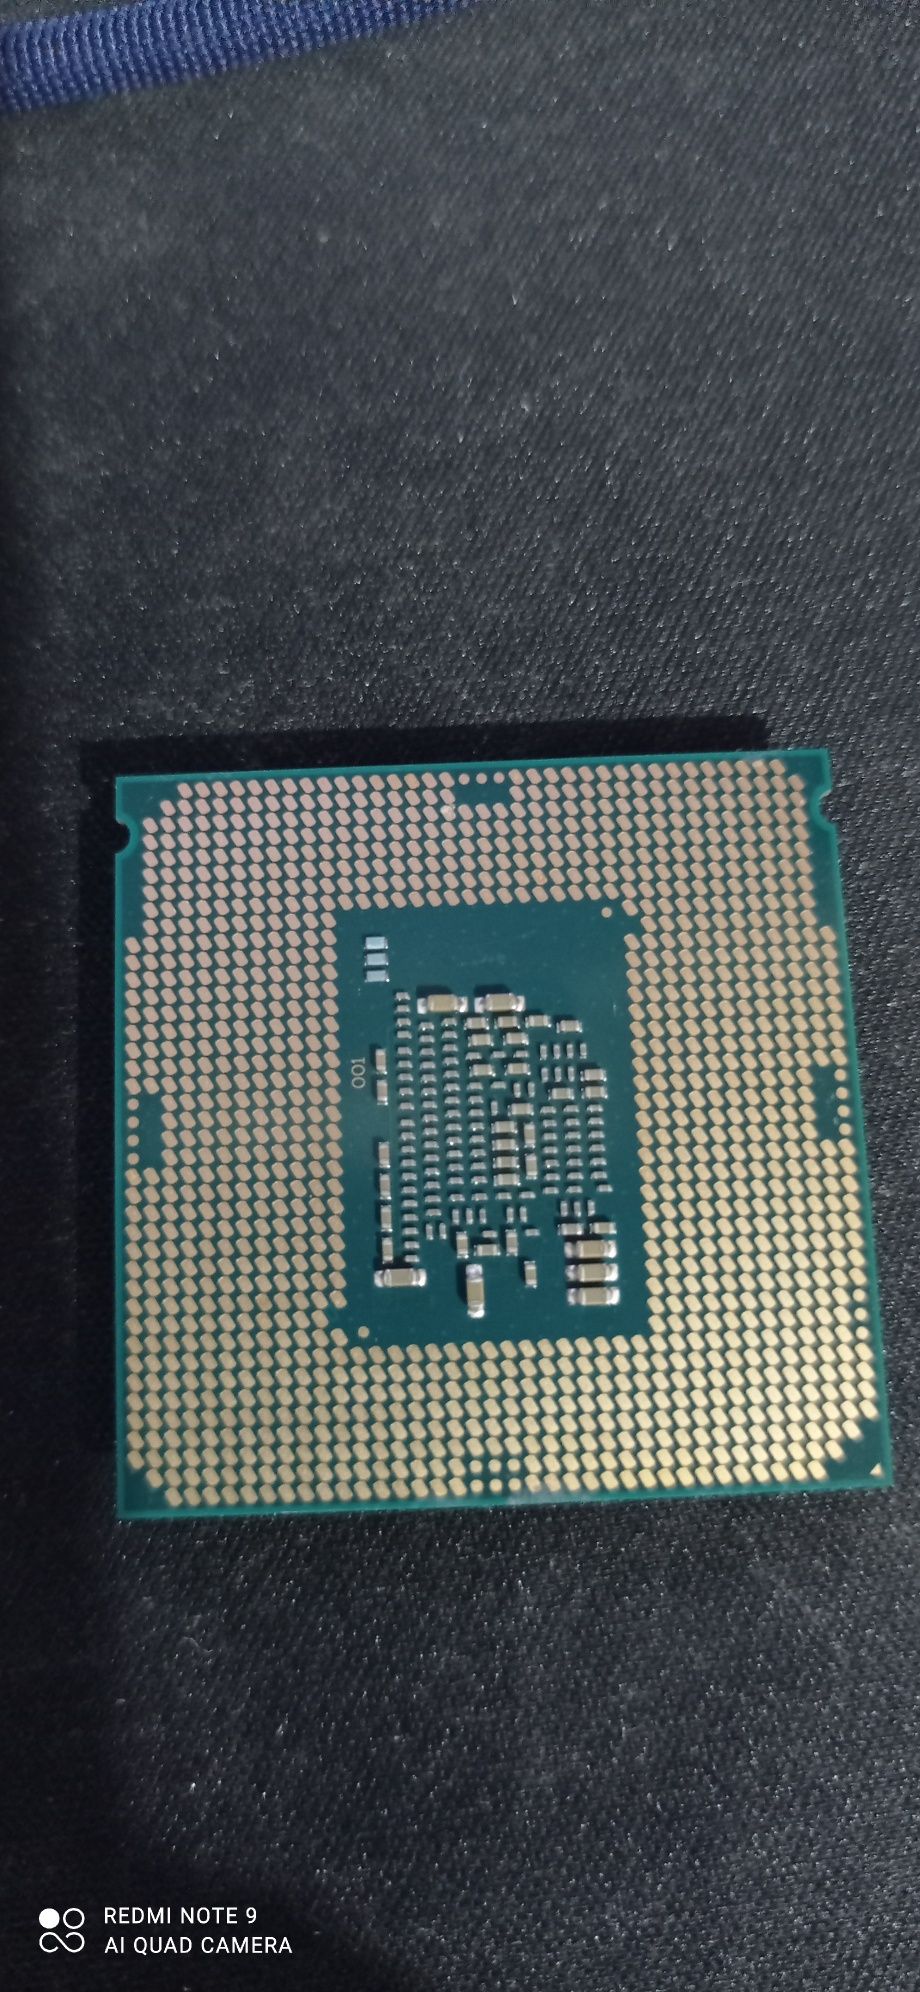 Processador i3 7100 3.9 ghz